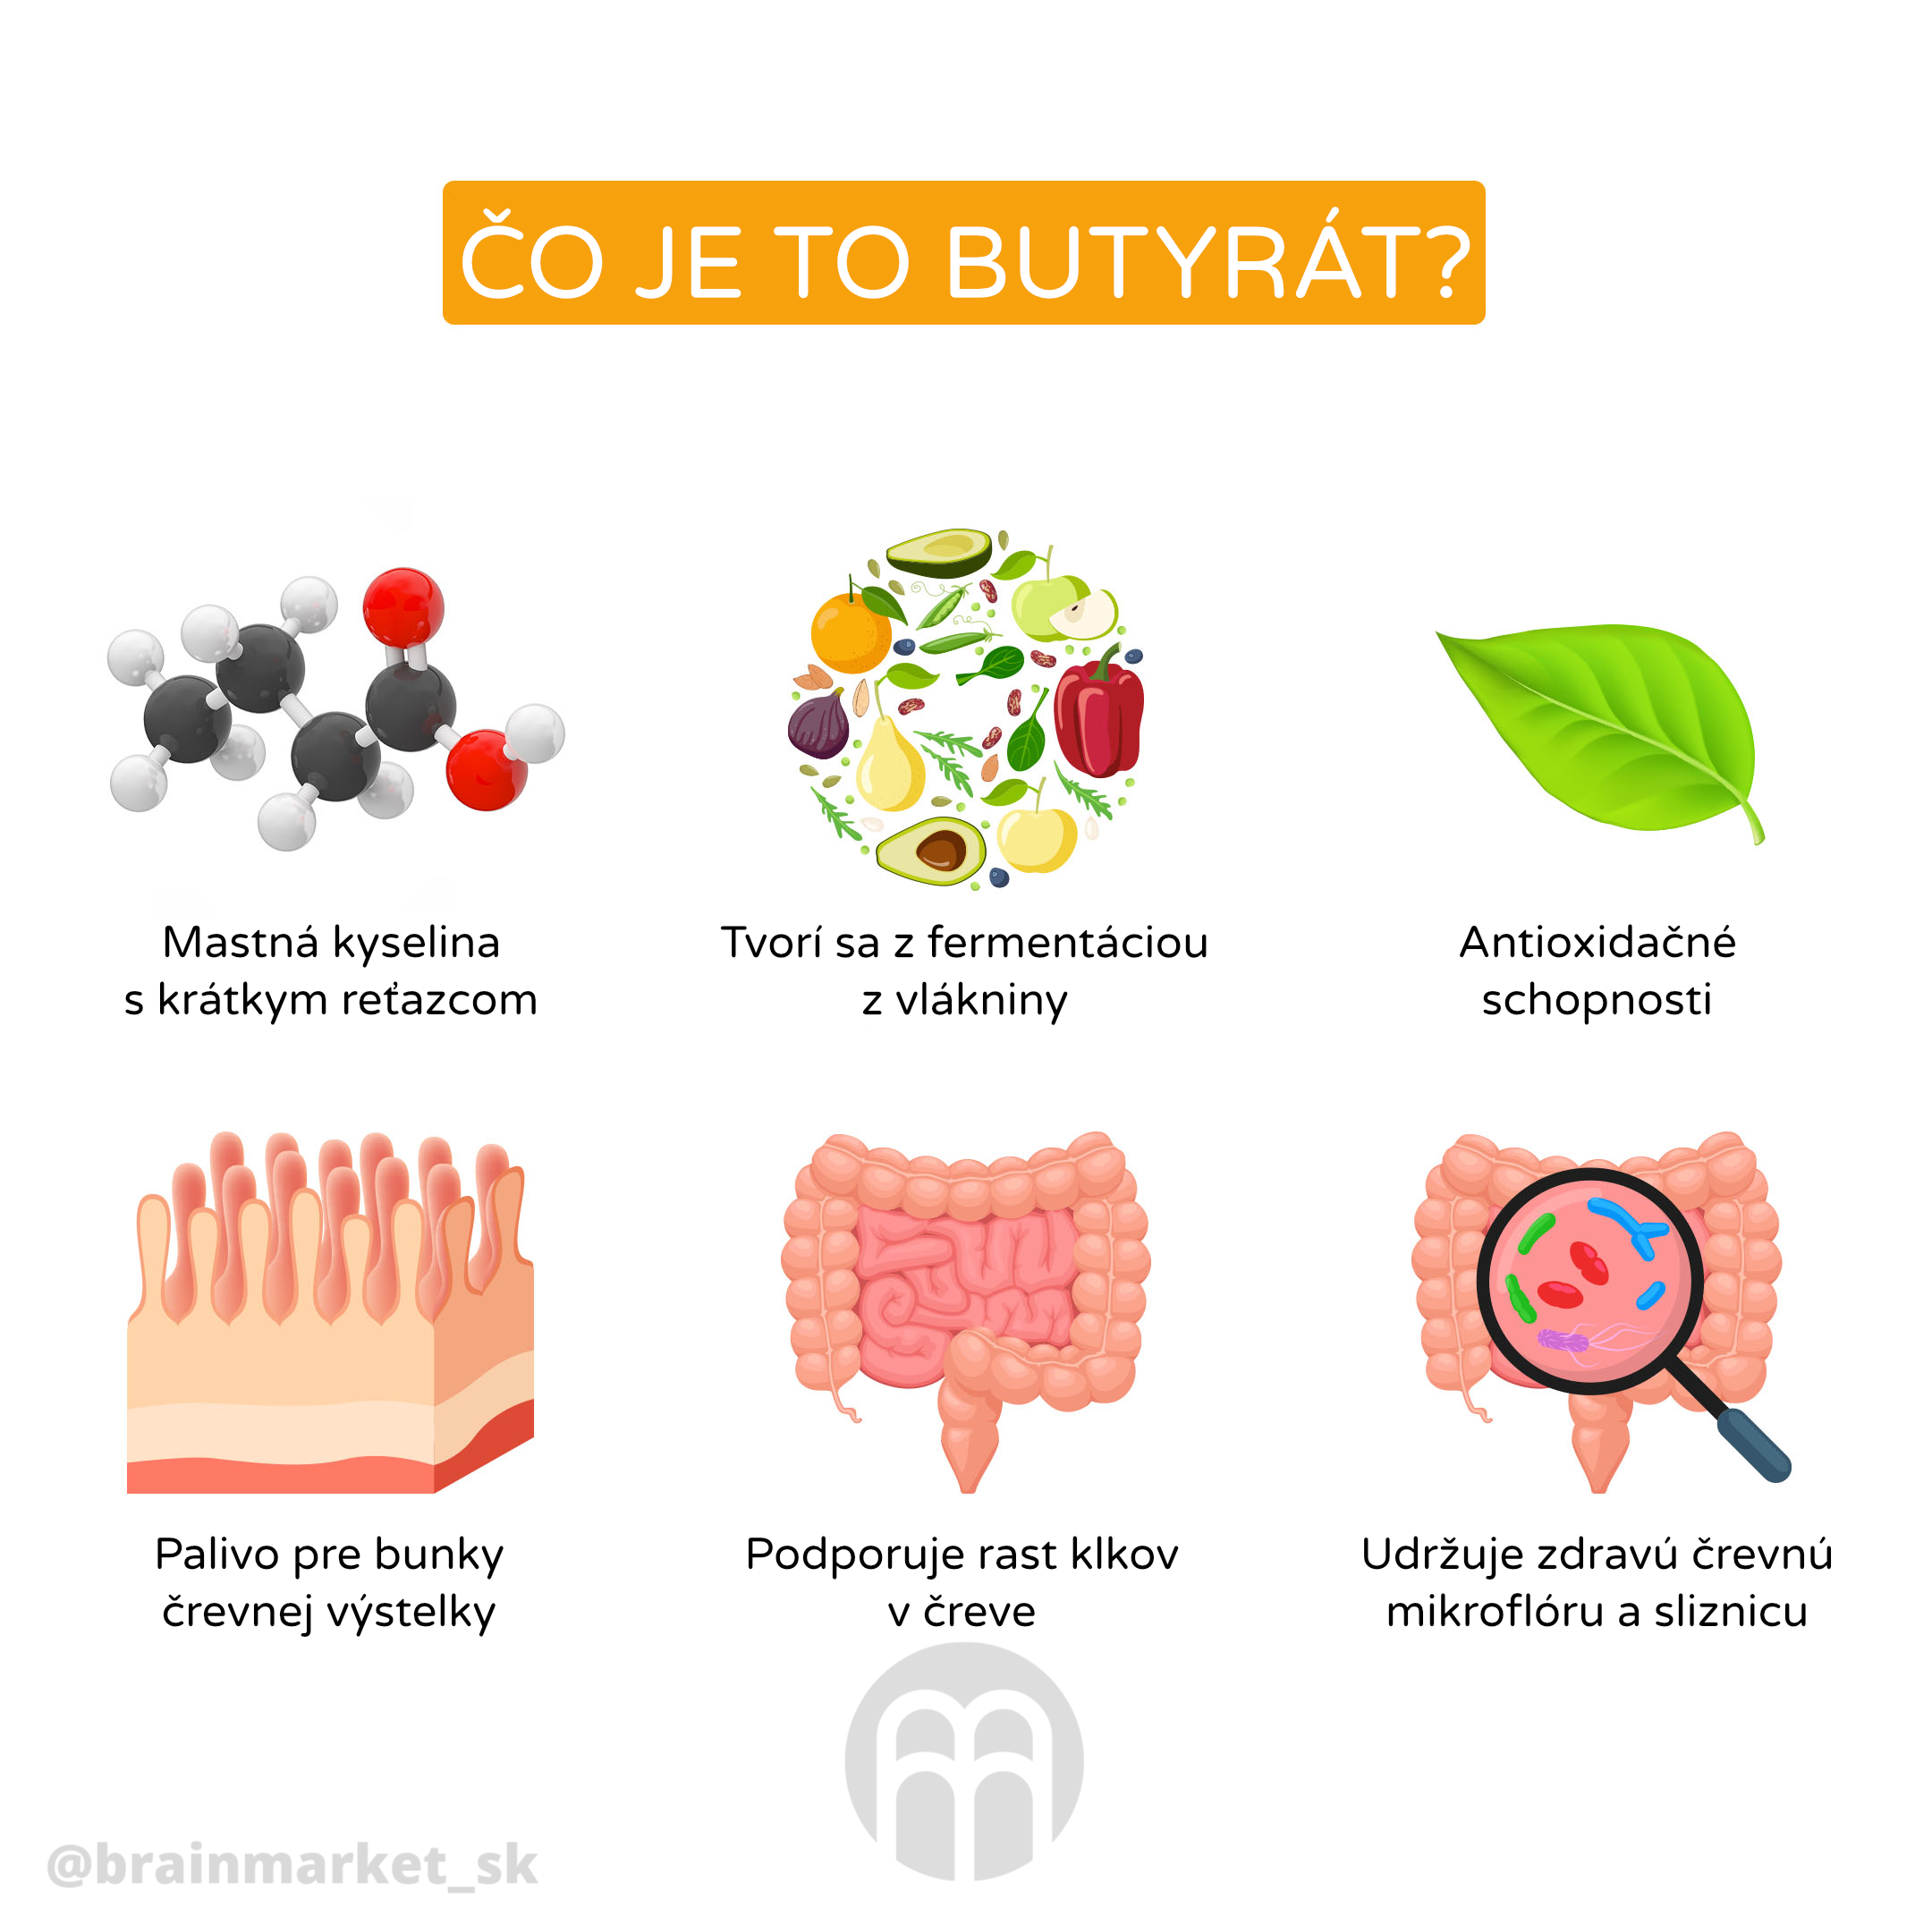 butyrat_infografika_brainmarket_cz